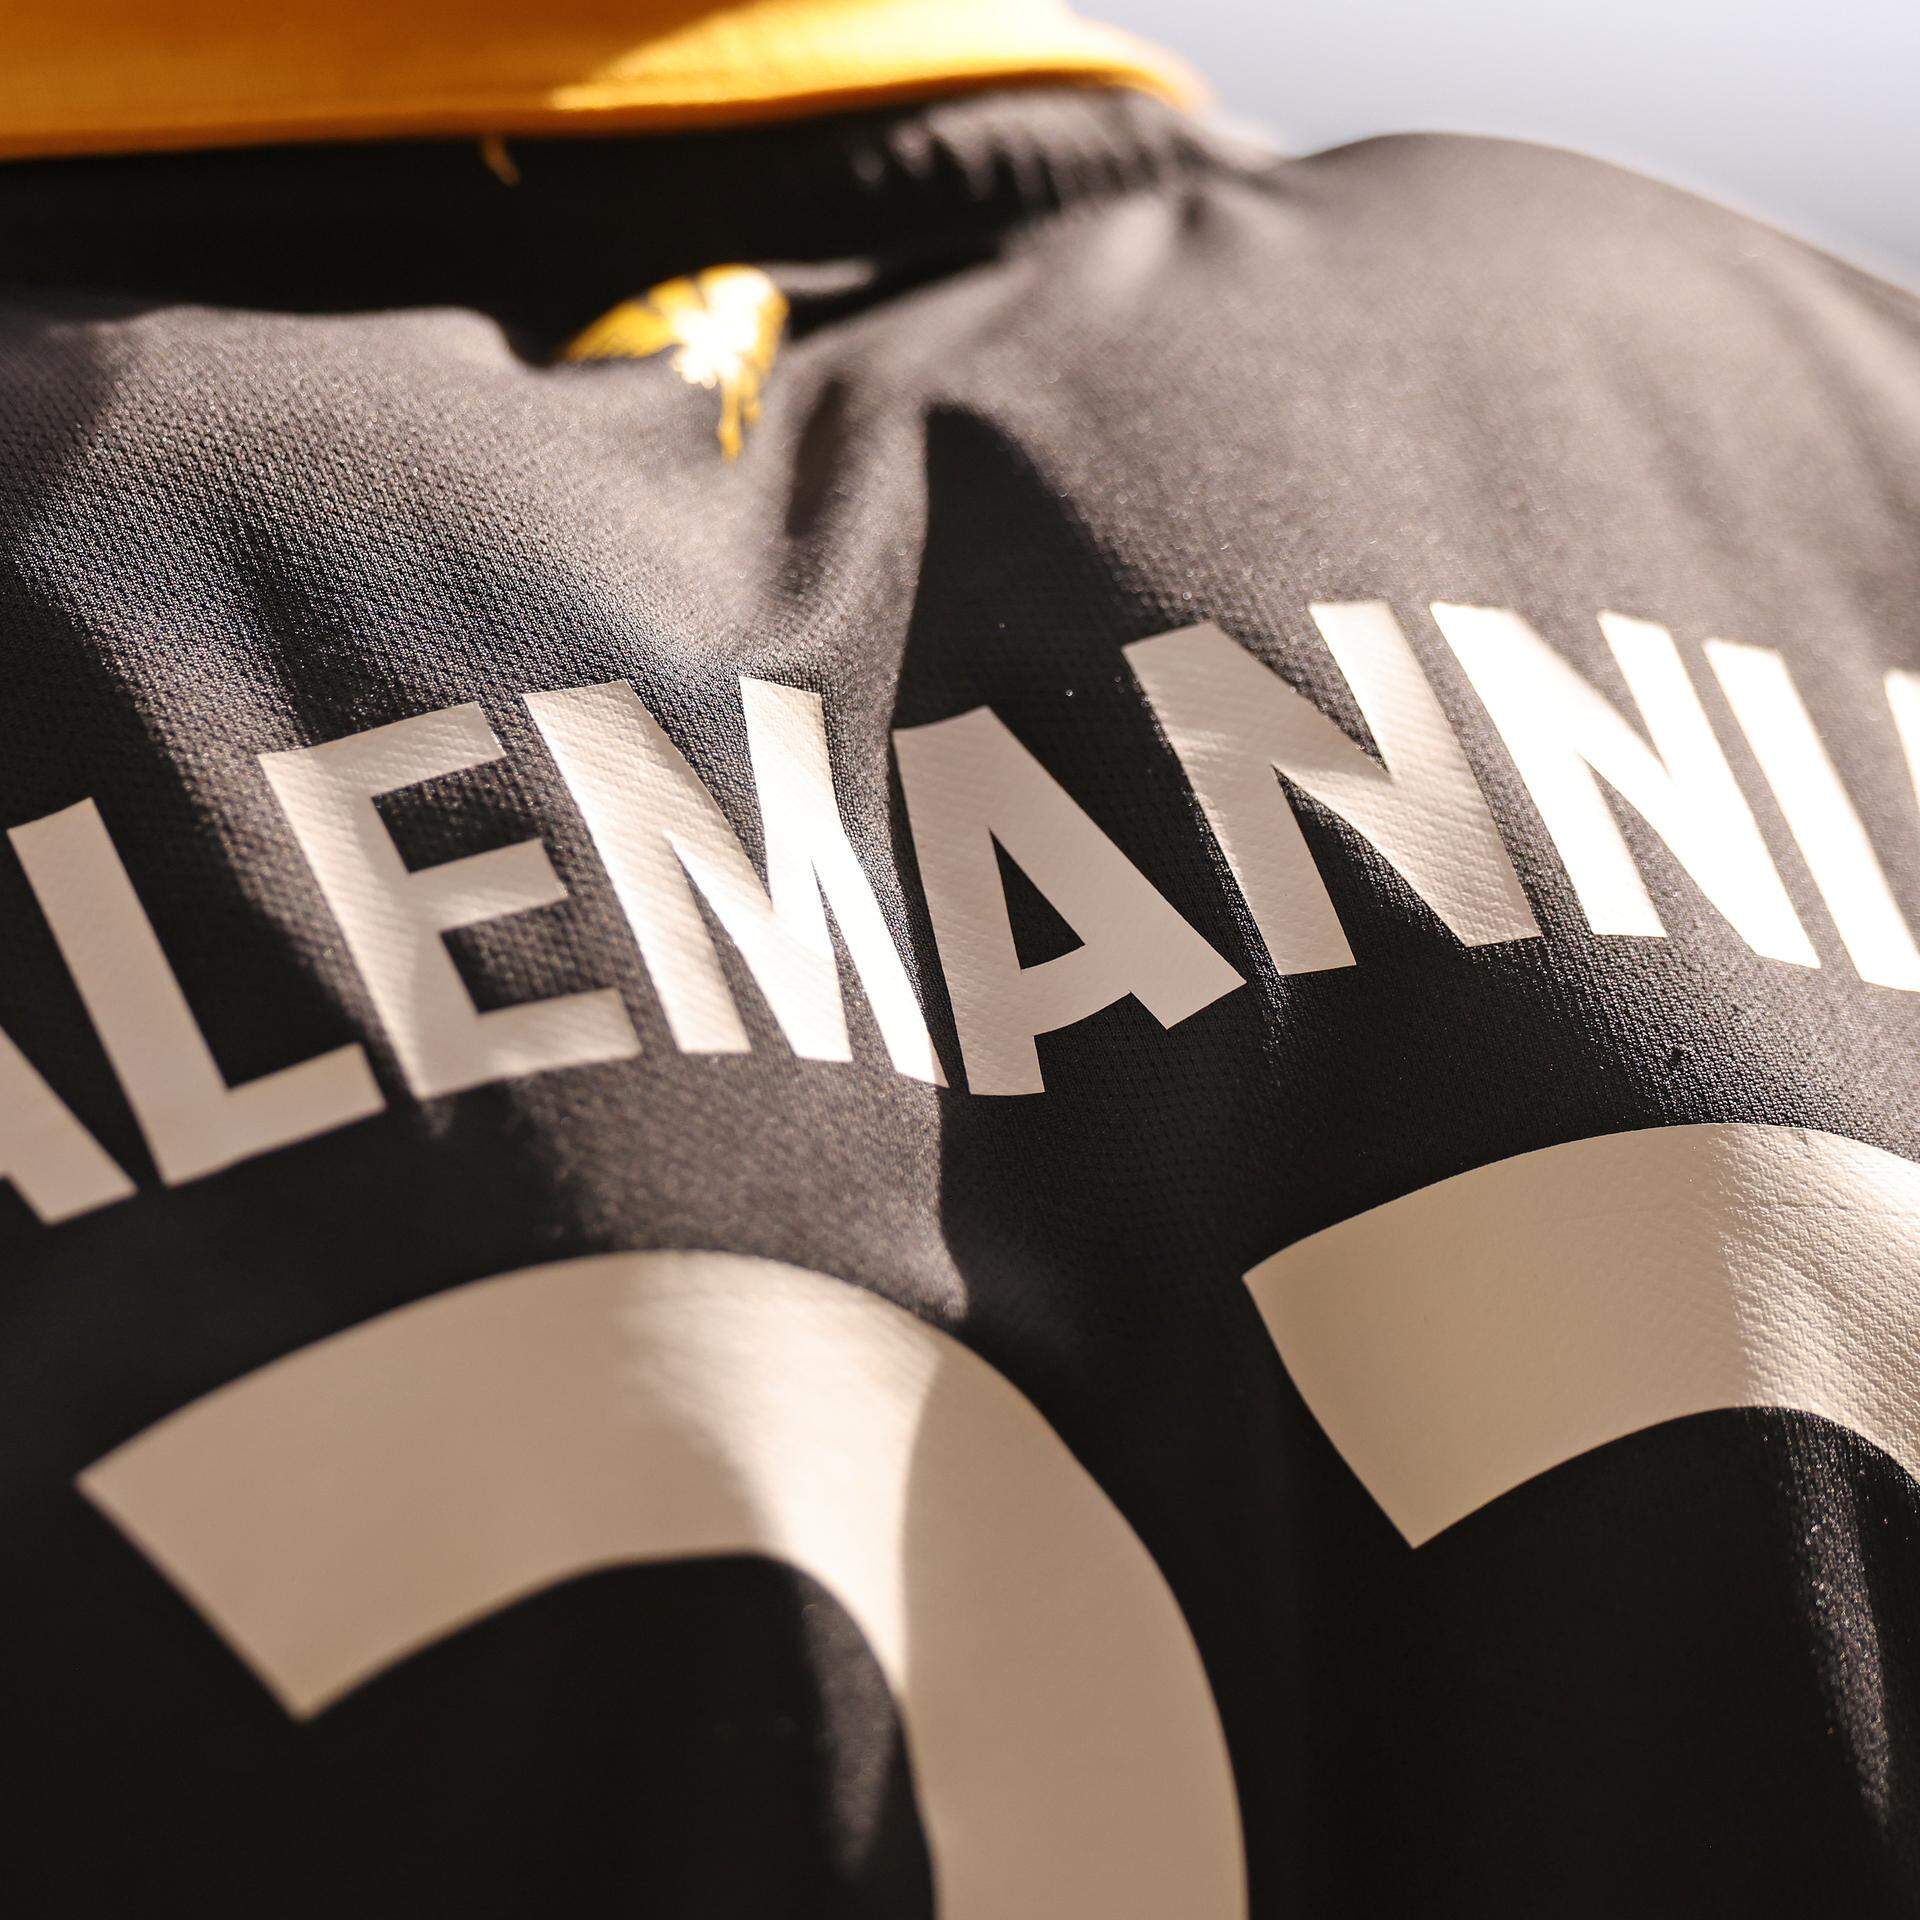 Alemannia Aachen – seit dem Wochenende endlich wieder drittklassig.